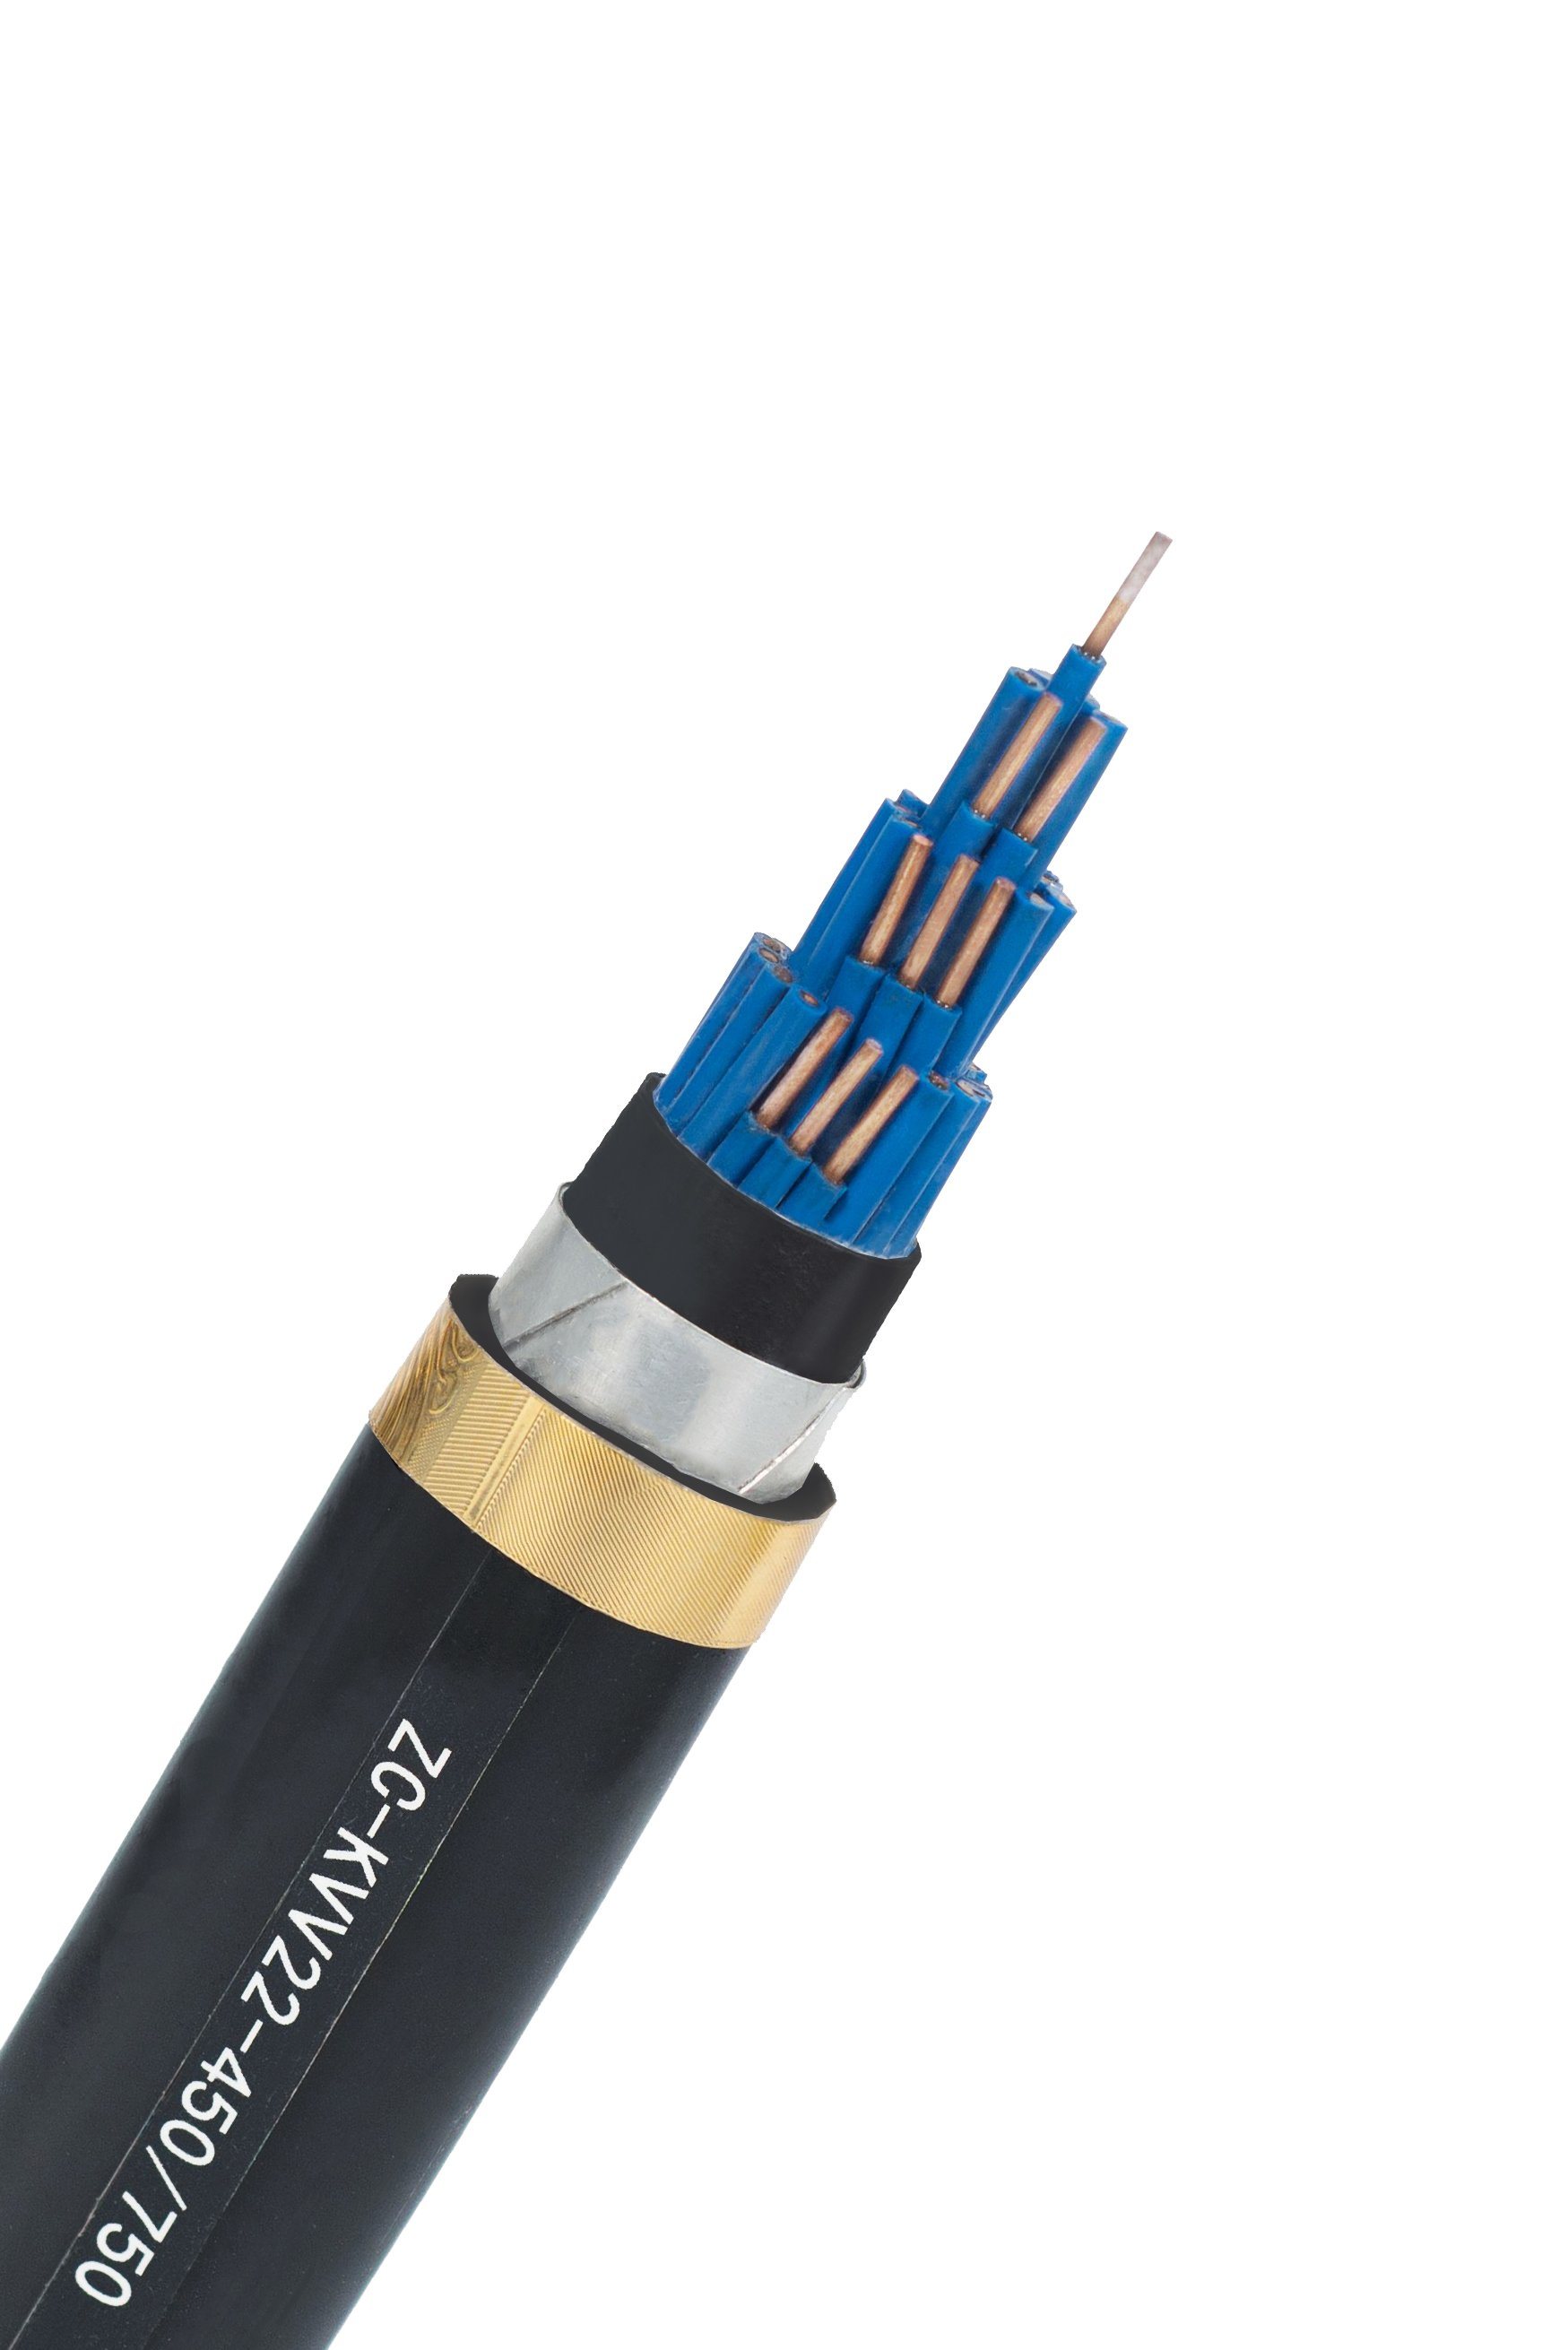 
                Cuivre pur de haute qualité un câble blindé multi-coeurs blindé blindé du câble de commande de contrôle du câble électrique 2/2.5mm sur le fil de câble
            